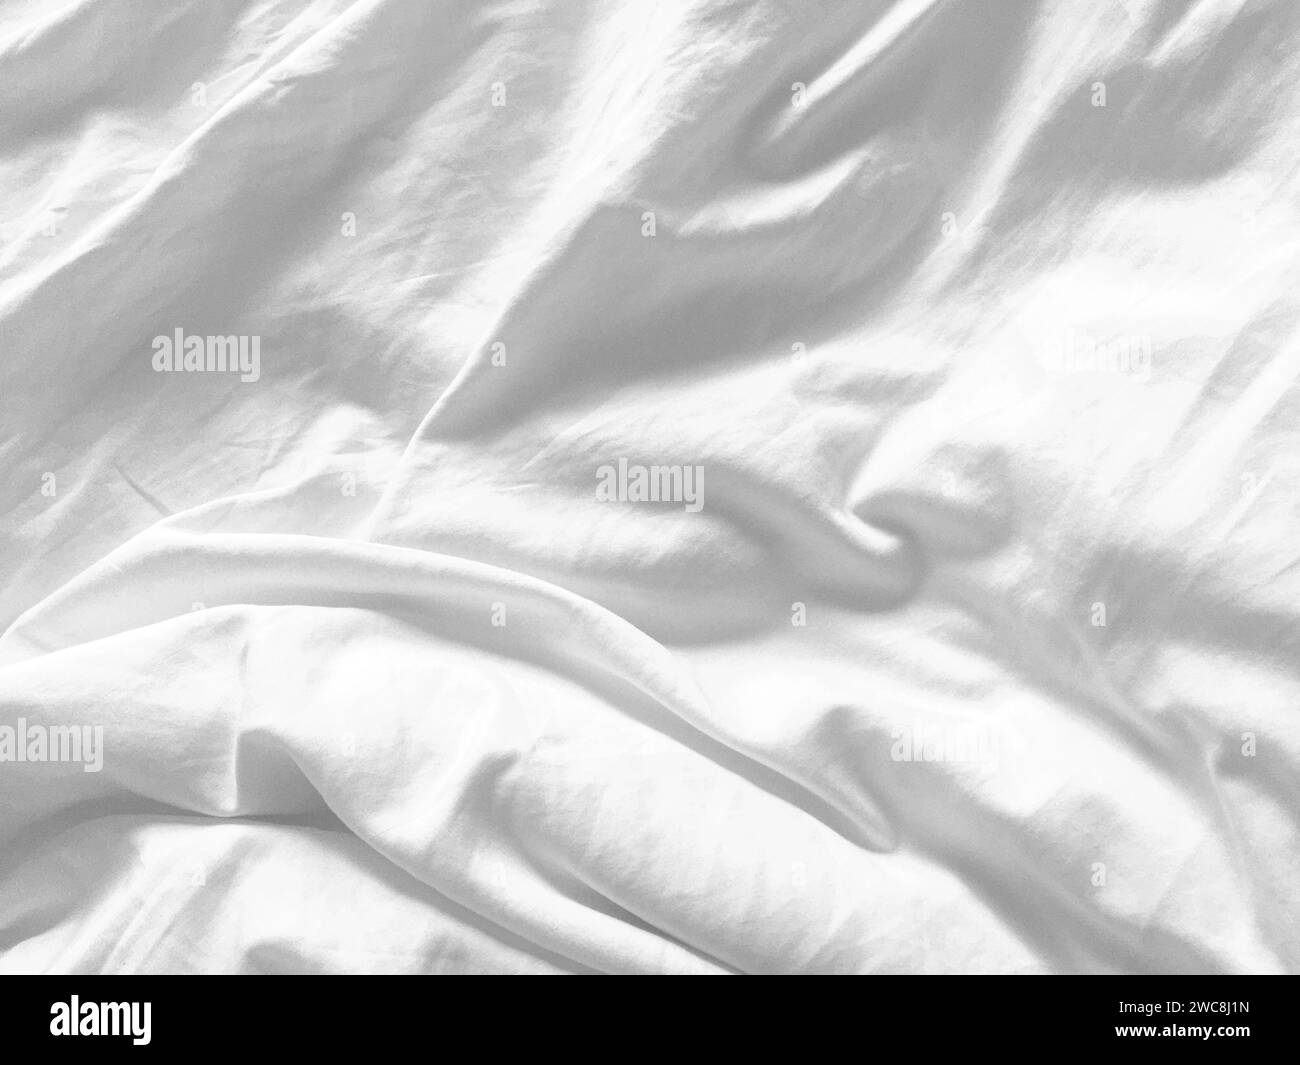 Uno sfondo in tessuto bianco immacolato che mostra la lussuosa texture della seta, crea un'atmosfera astratta e morbida, perfetta per un design di alto livello. Foto Stock